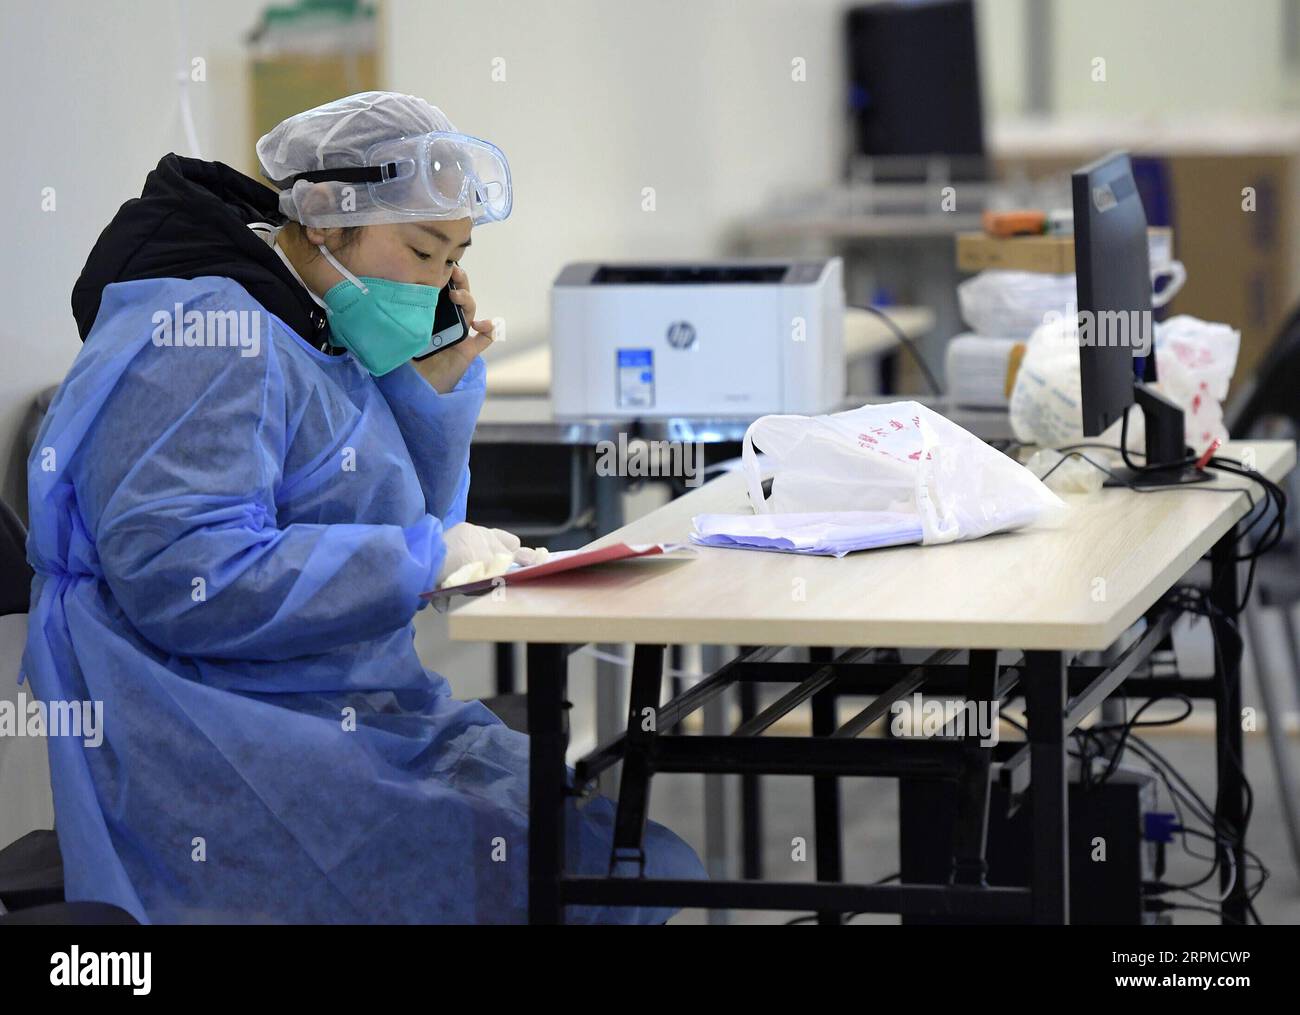 200208 -- WUHAN, 8 febbraio 2020 -- Un operatore medico lavora nell'unità infermieristica B di Wuhan Livingroom a Wuhan, provincia di Hubei, Cina centrale, 8 febbraio 2020. Il complesso di edifici culturali chiamato Wuhan Livingroom, che è convertito in un ospedale per ricevere pazienti infettati dal nuovo coronavirus, è progettato per ospitare 2.000 letti. L'unità infermieristica B dell'ospedale è pronta, mentre l'unità A è stata messa in uso in precedenza. CHINA-HUBEI-WUHAN-CORONAVIRUS-IMPROVVISATO OSPEDALE-READY CN LIXHE PUBLICATIONXNOTXINXCHN Foto Stock